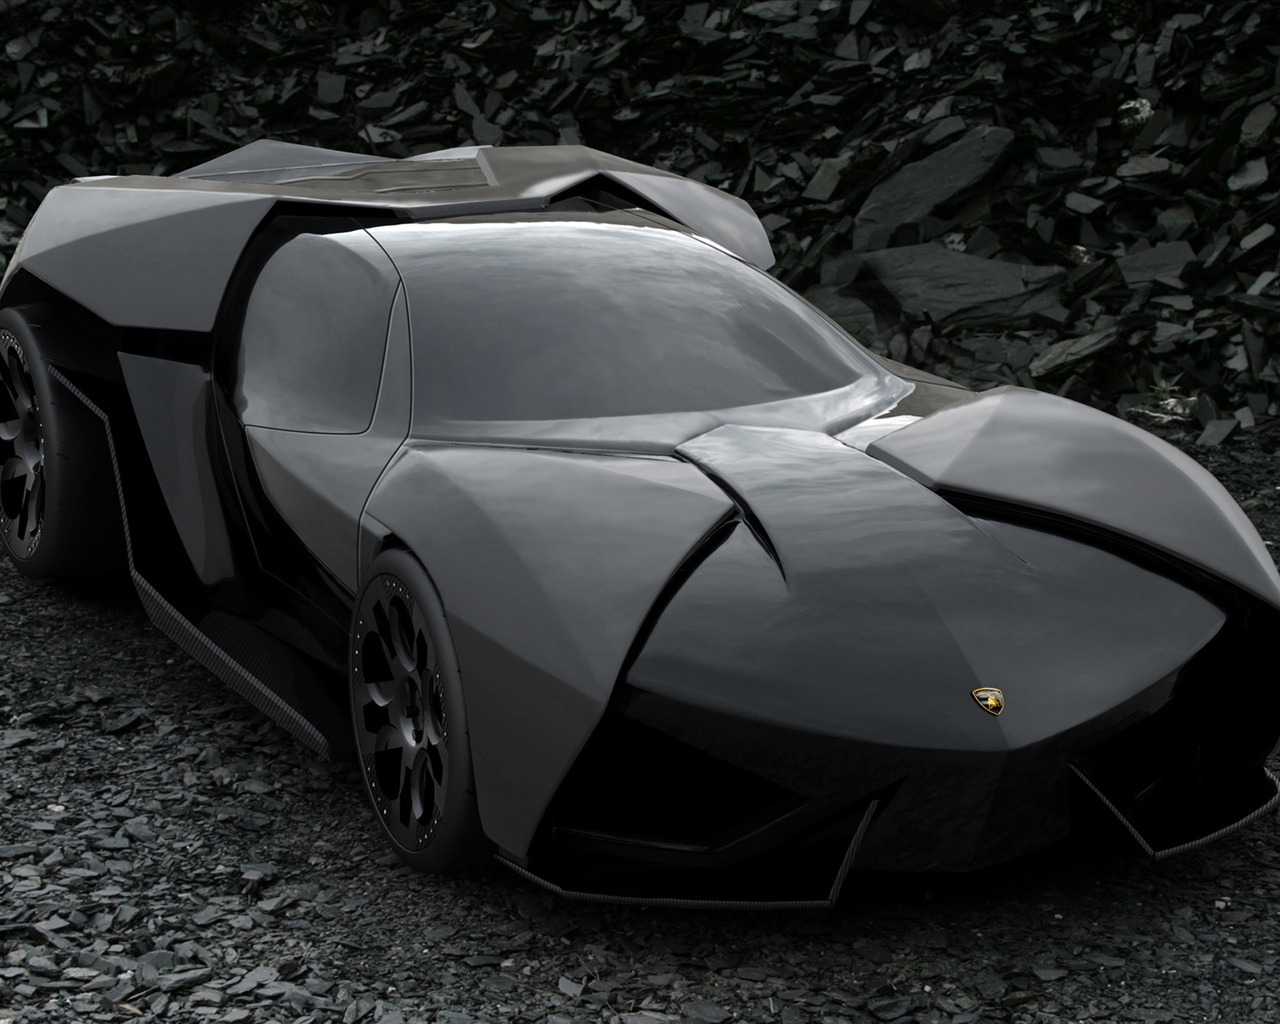 Lamborghini Ankonian Concept for 1280 x 1024 resolution